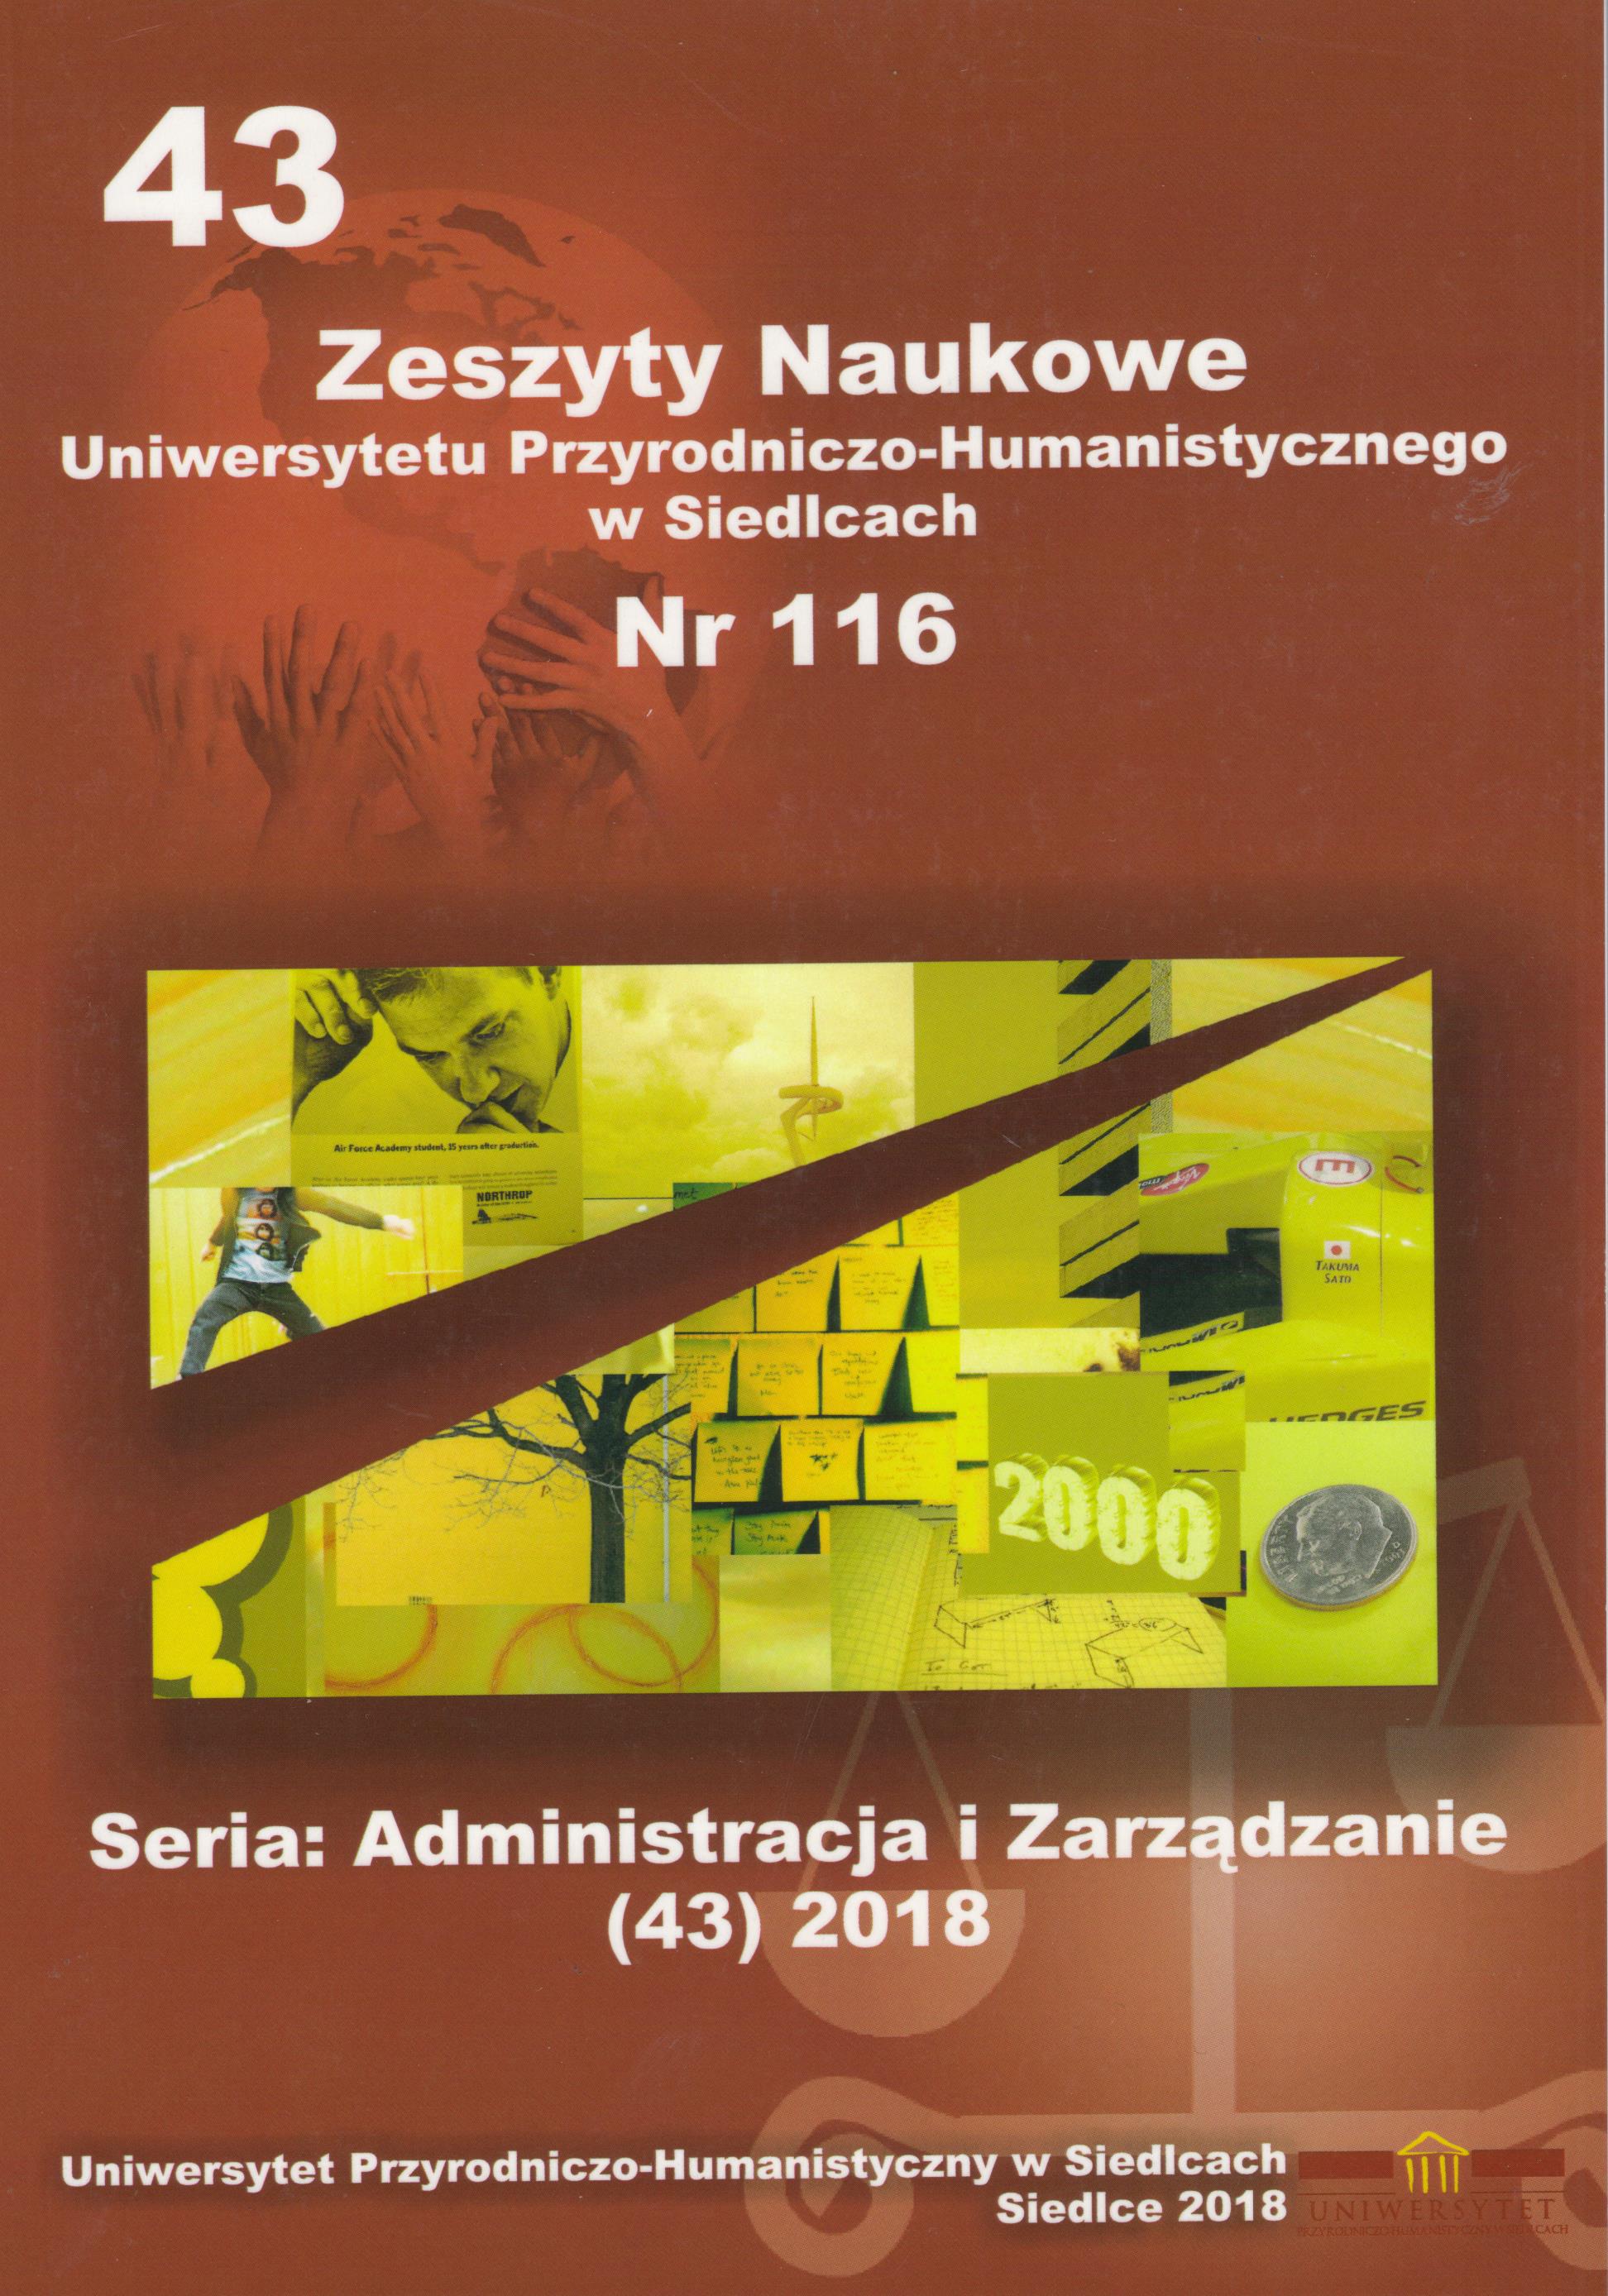 					View Vol. 43 No. 116 (2018): Zeszyty Naukowe Uniwersytetu Przyrodniczo-Humanistycznego w Siedlcach, Seria: Administracja i Zarządzanie
				